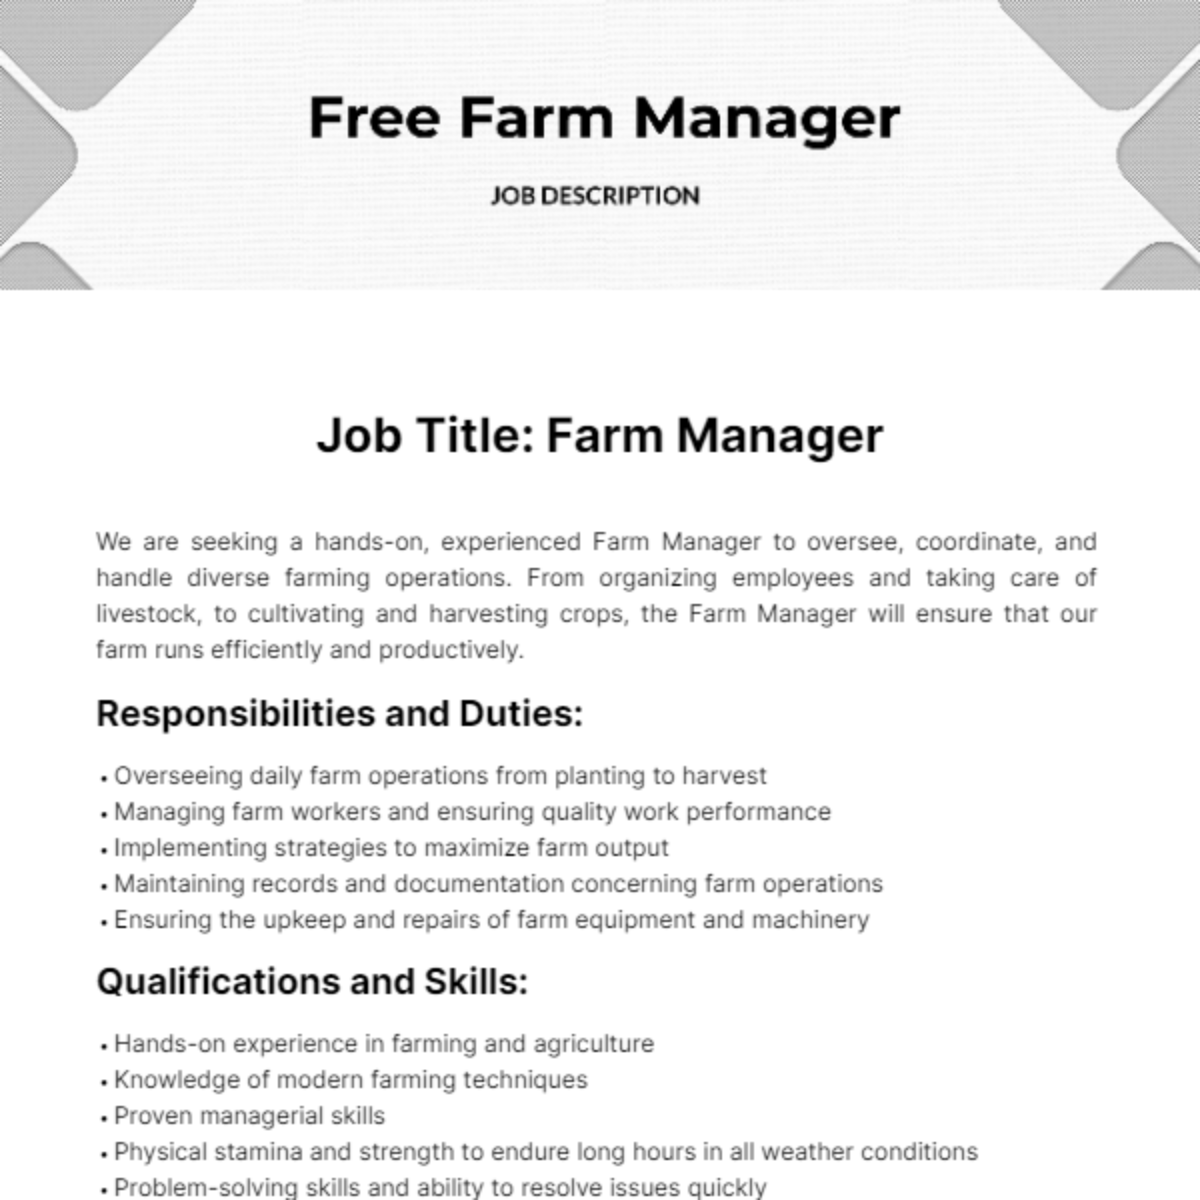 Farm Manager Job Description Template